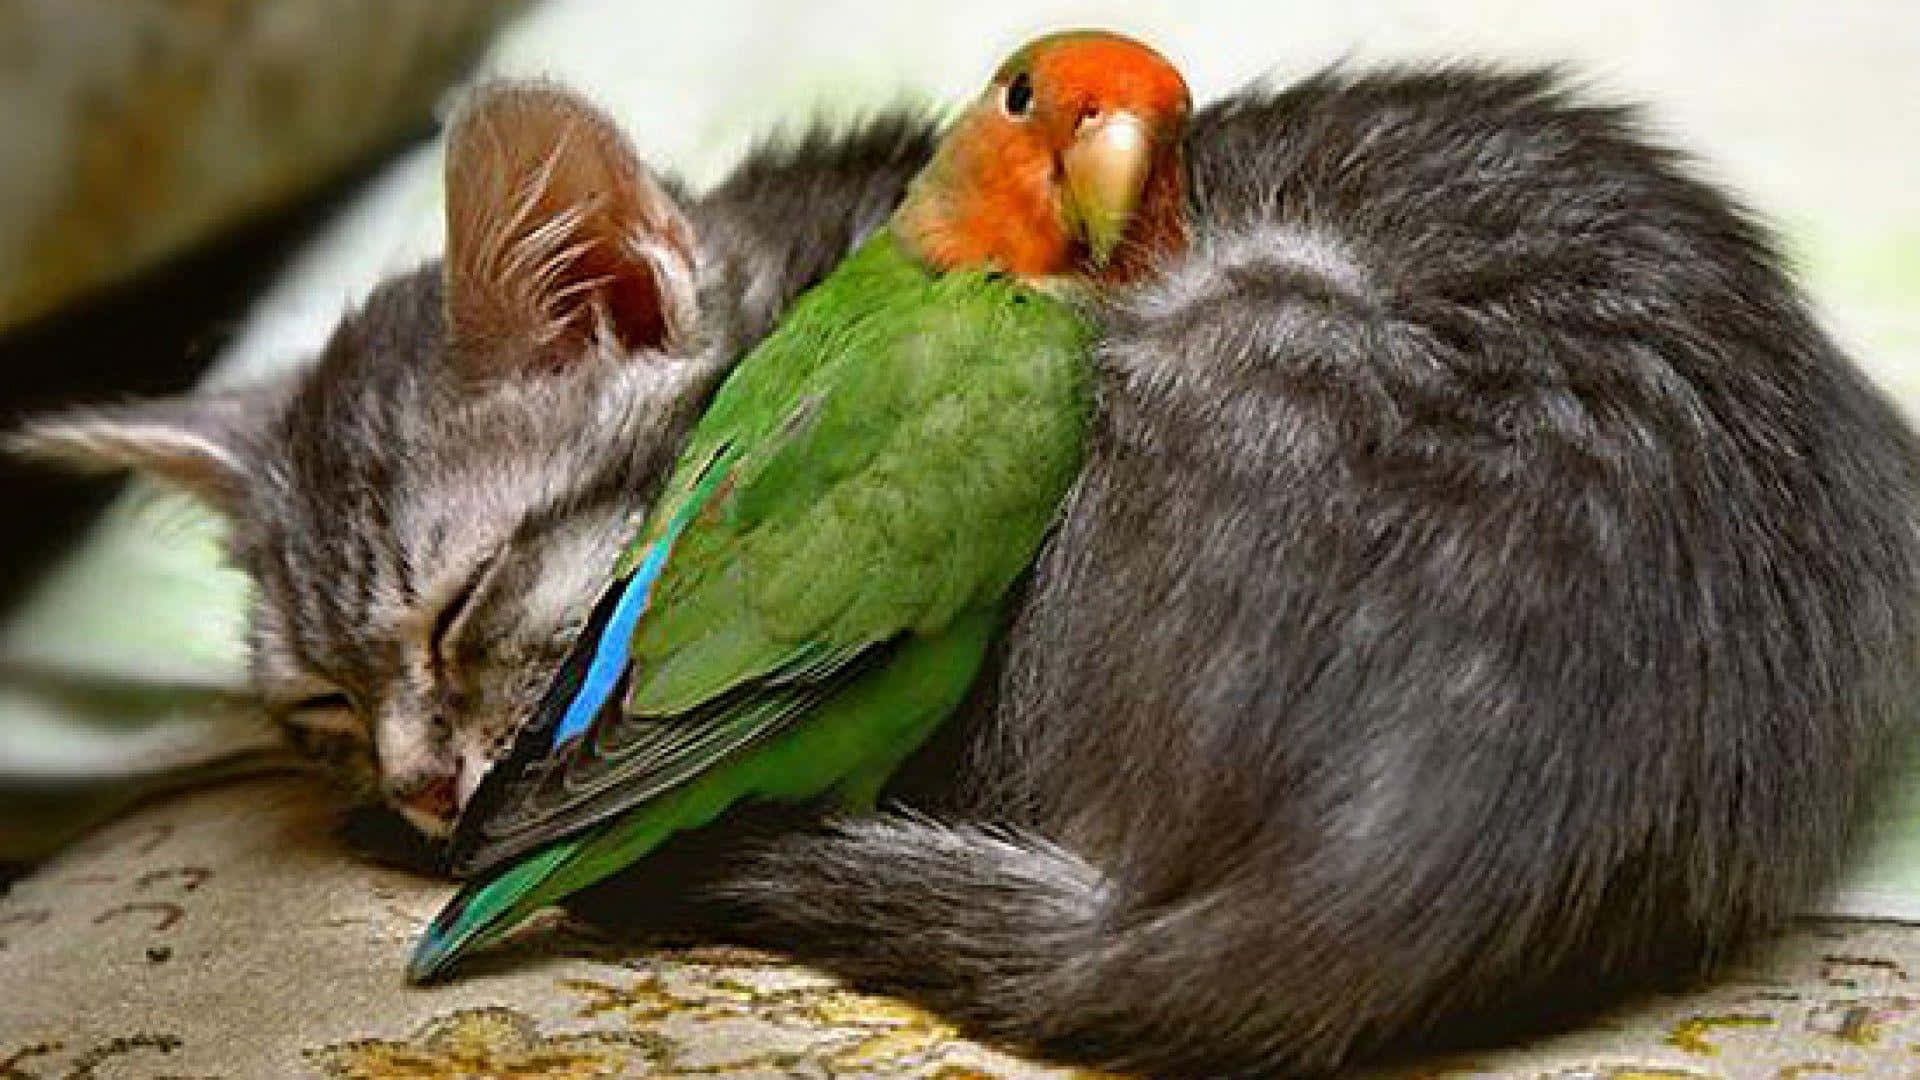 Liebesvögelmit Schlafender Katze Bild